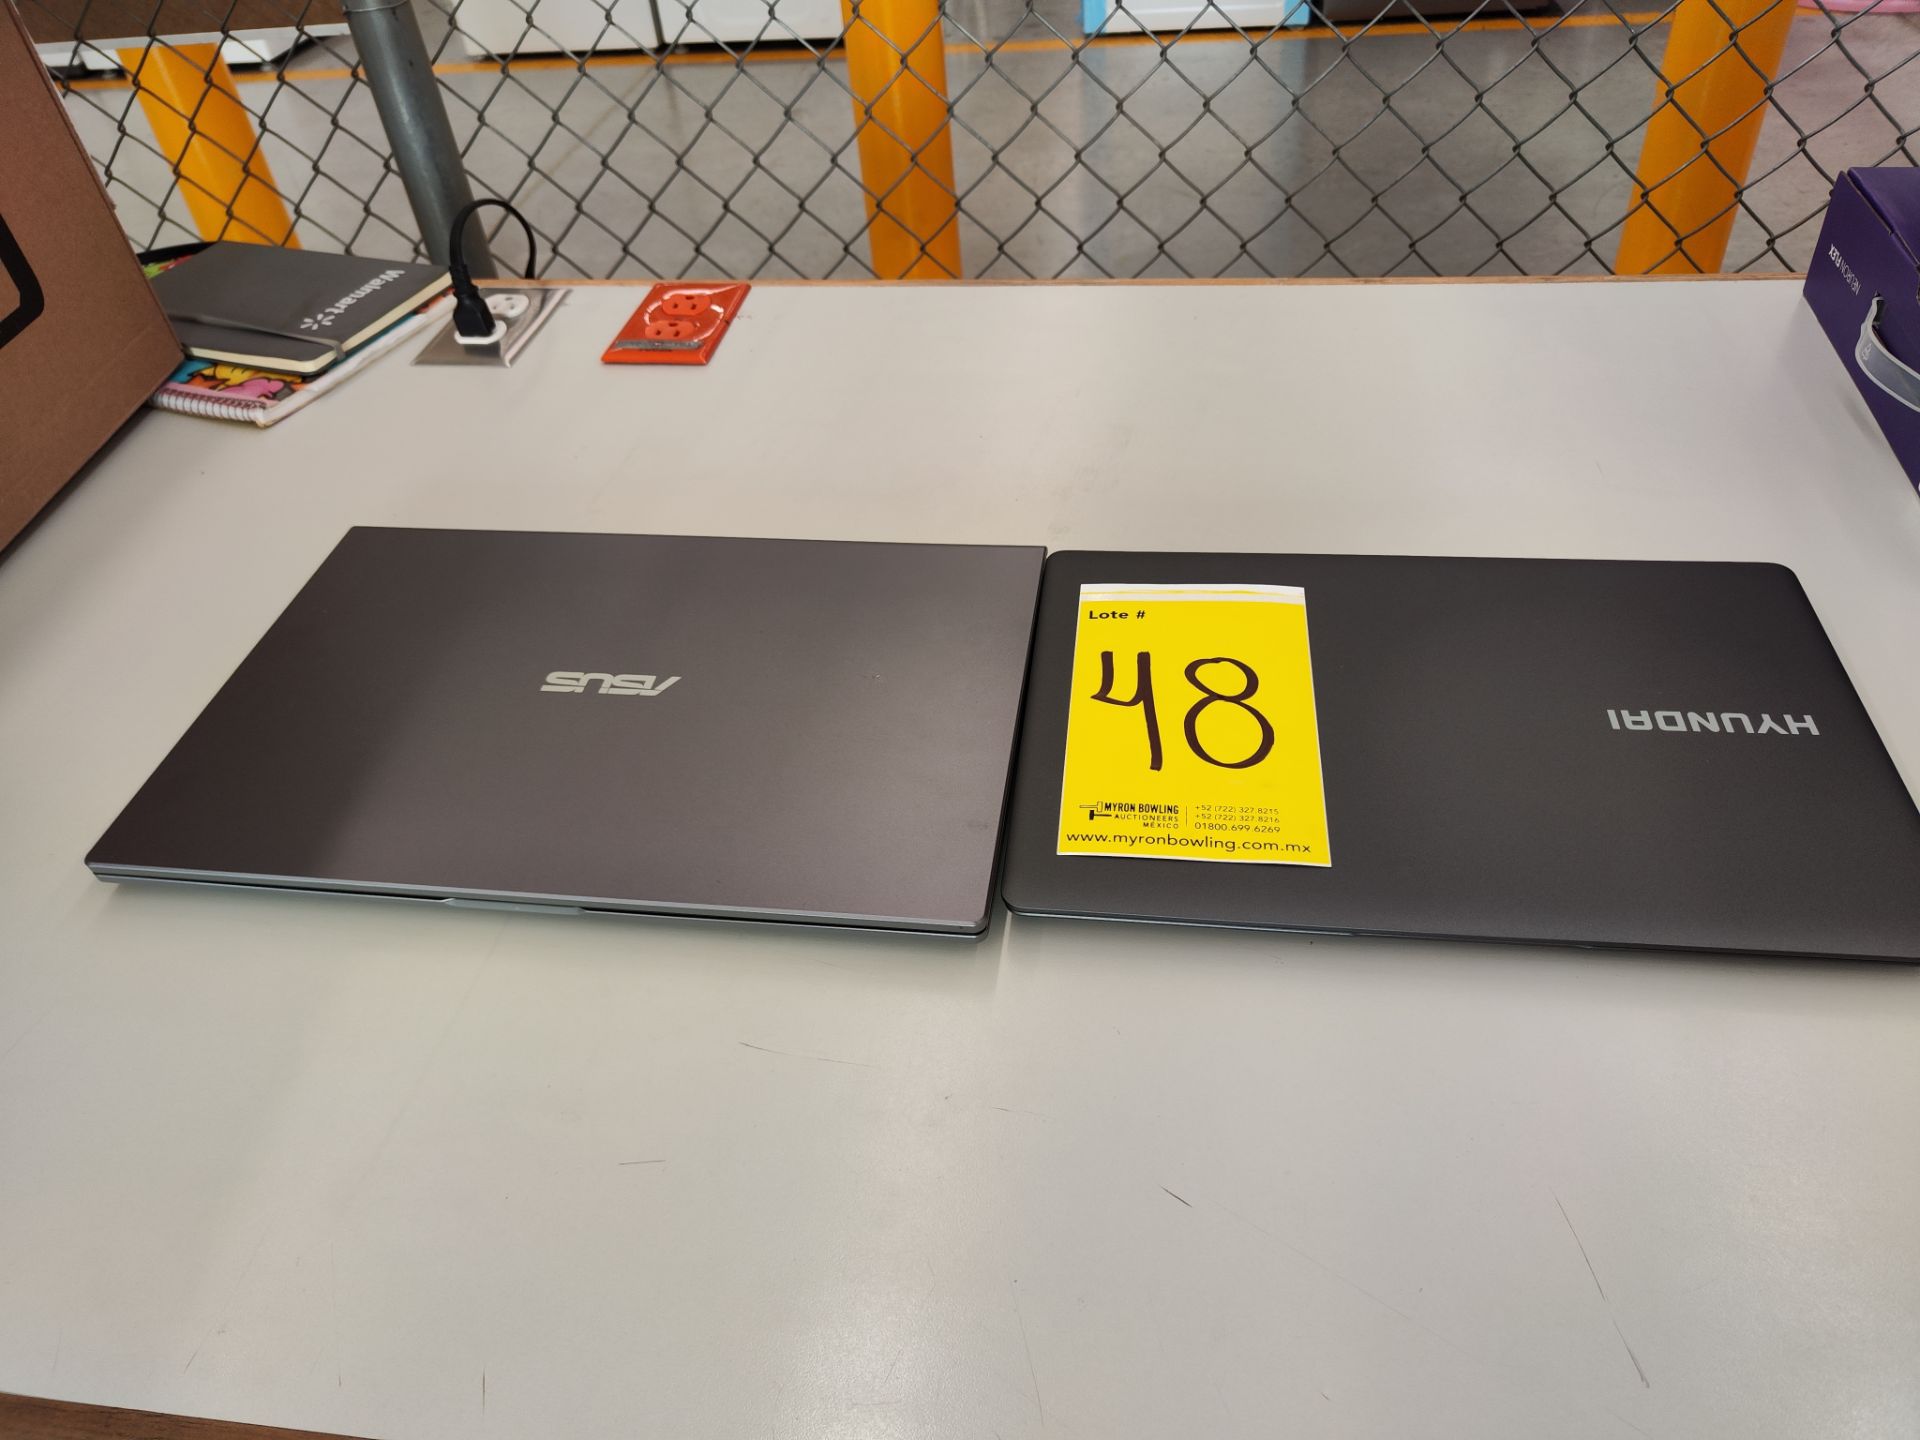 Lote de 2 laptops contiene: 1 laptop ASUS, Modelo D515D, Serie 39245, Almacenamiento 256 GB, RAM 8 - Bild 5 aus 6